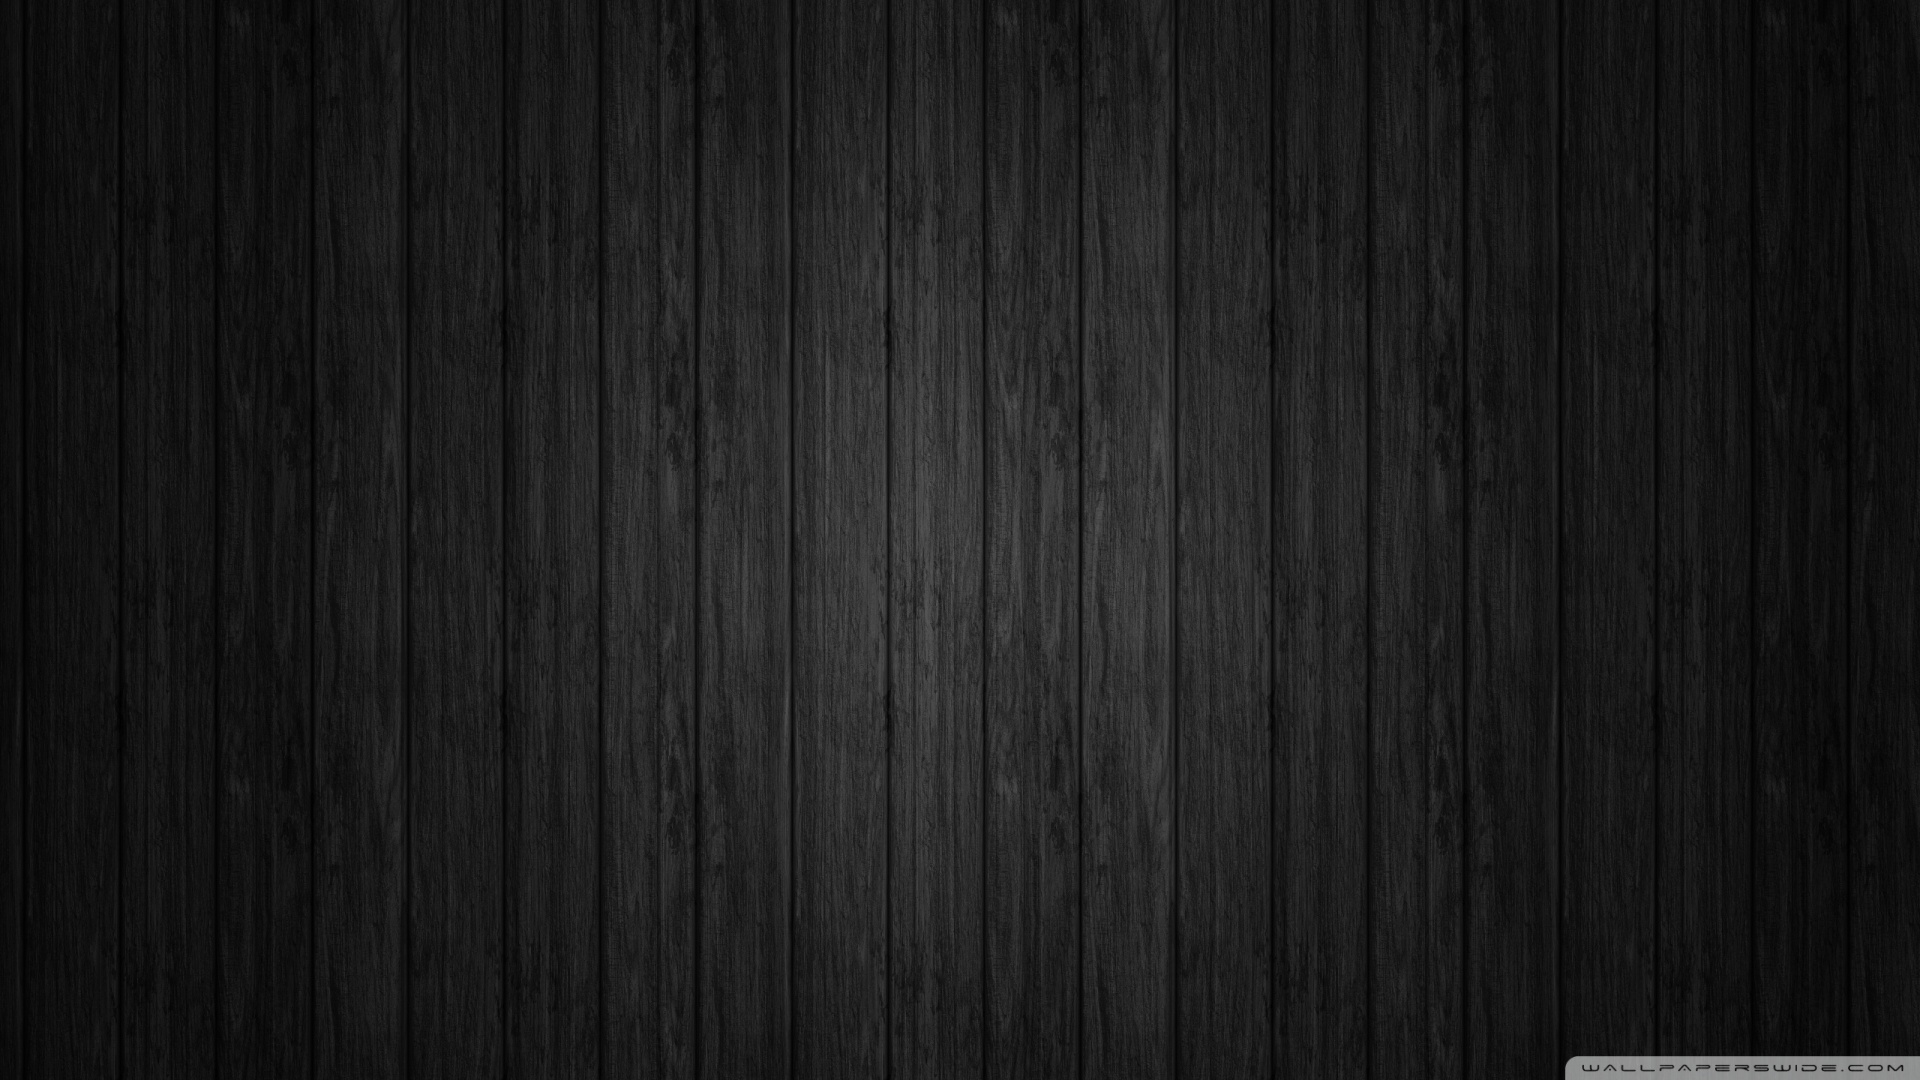 Dark Wood Background Wallpaper